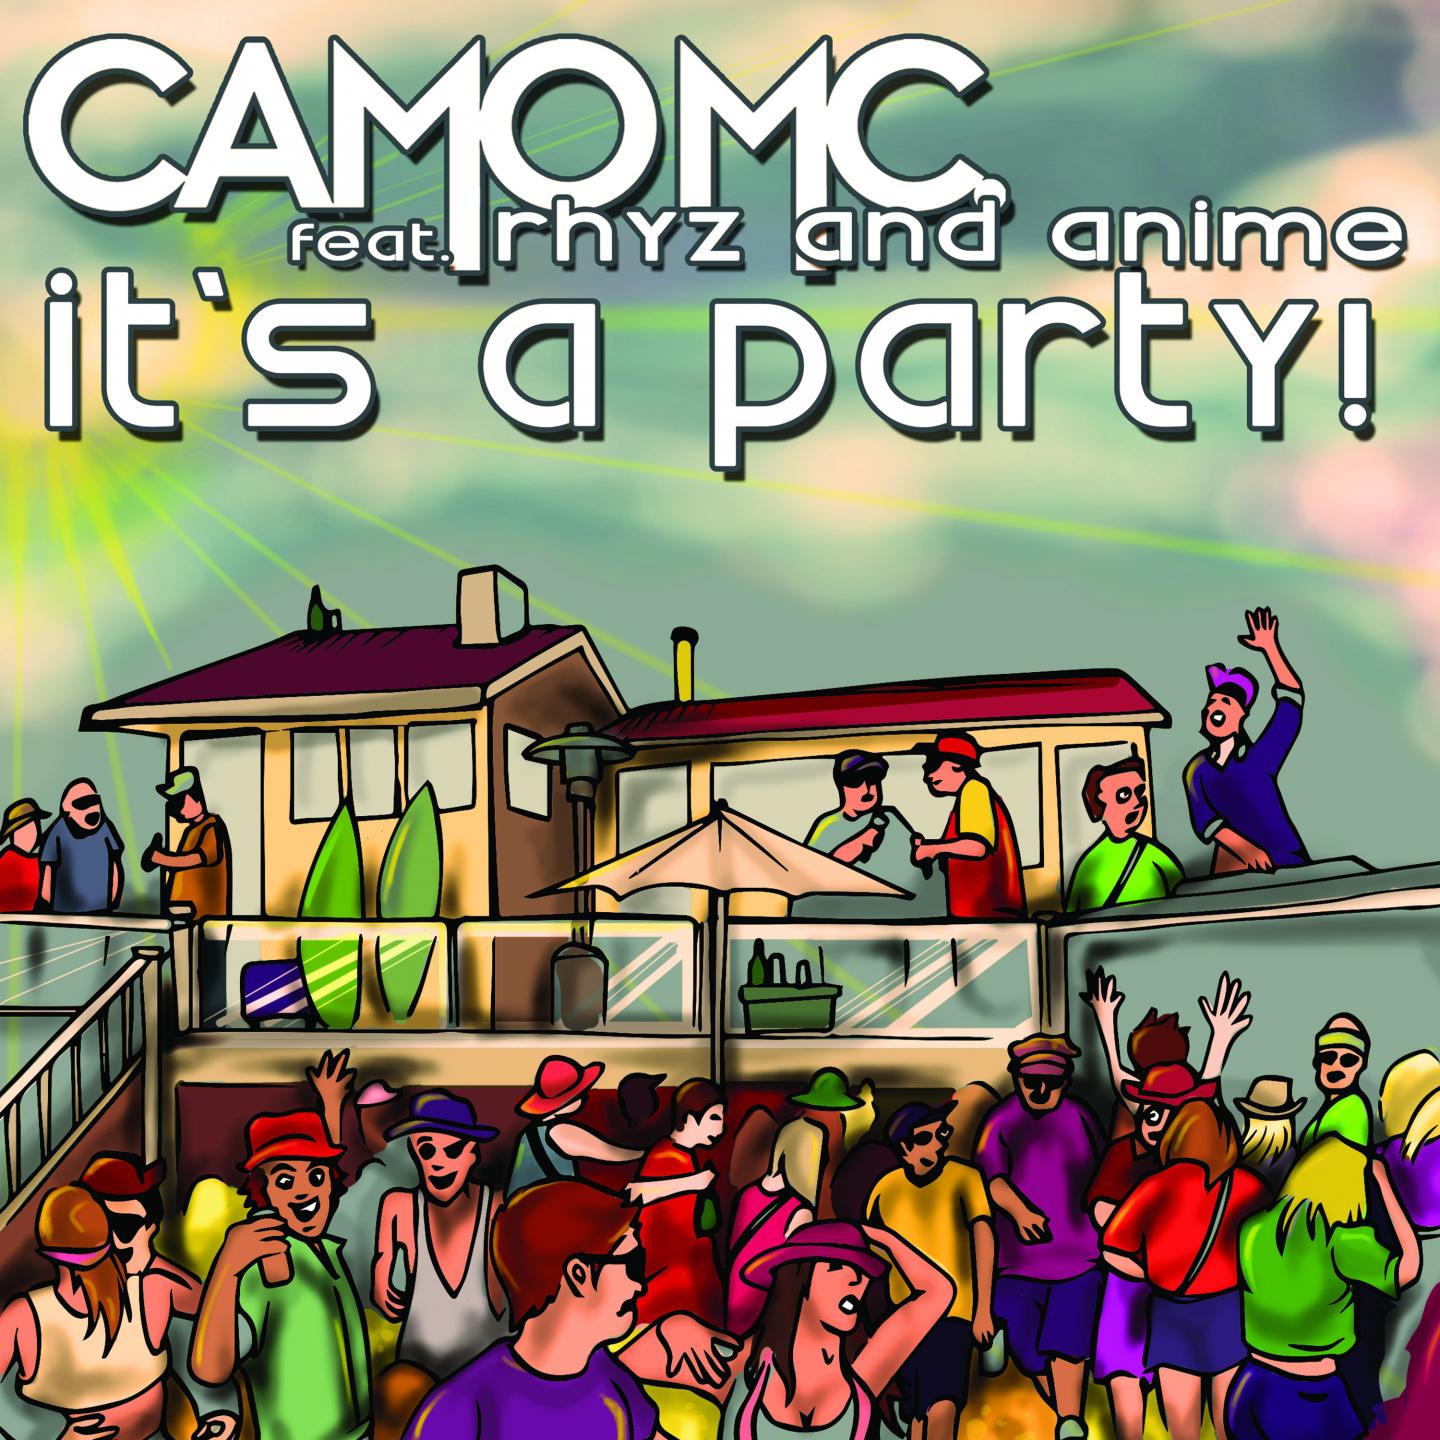 Camo MC - It's a Party!